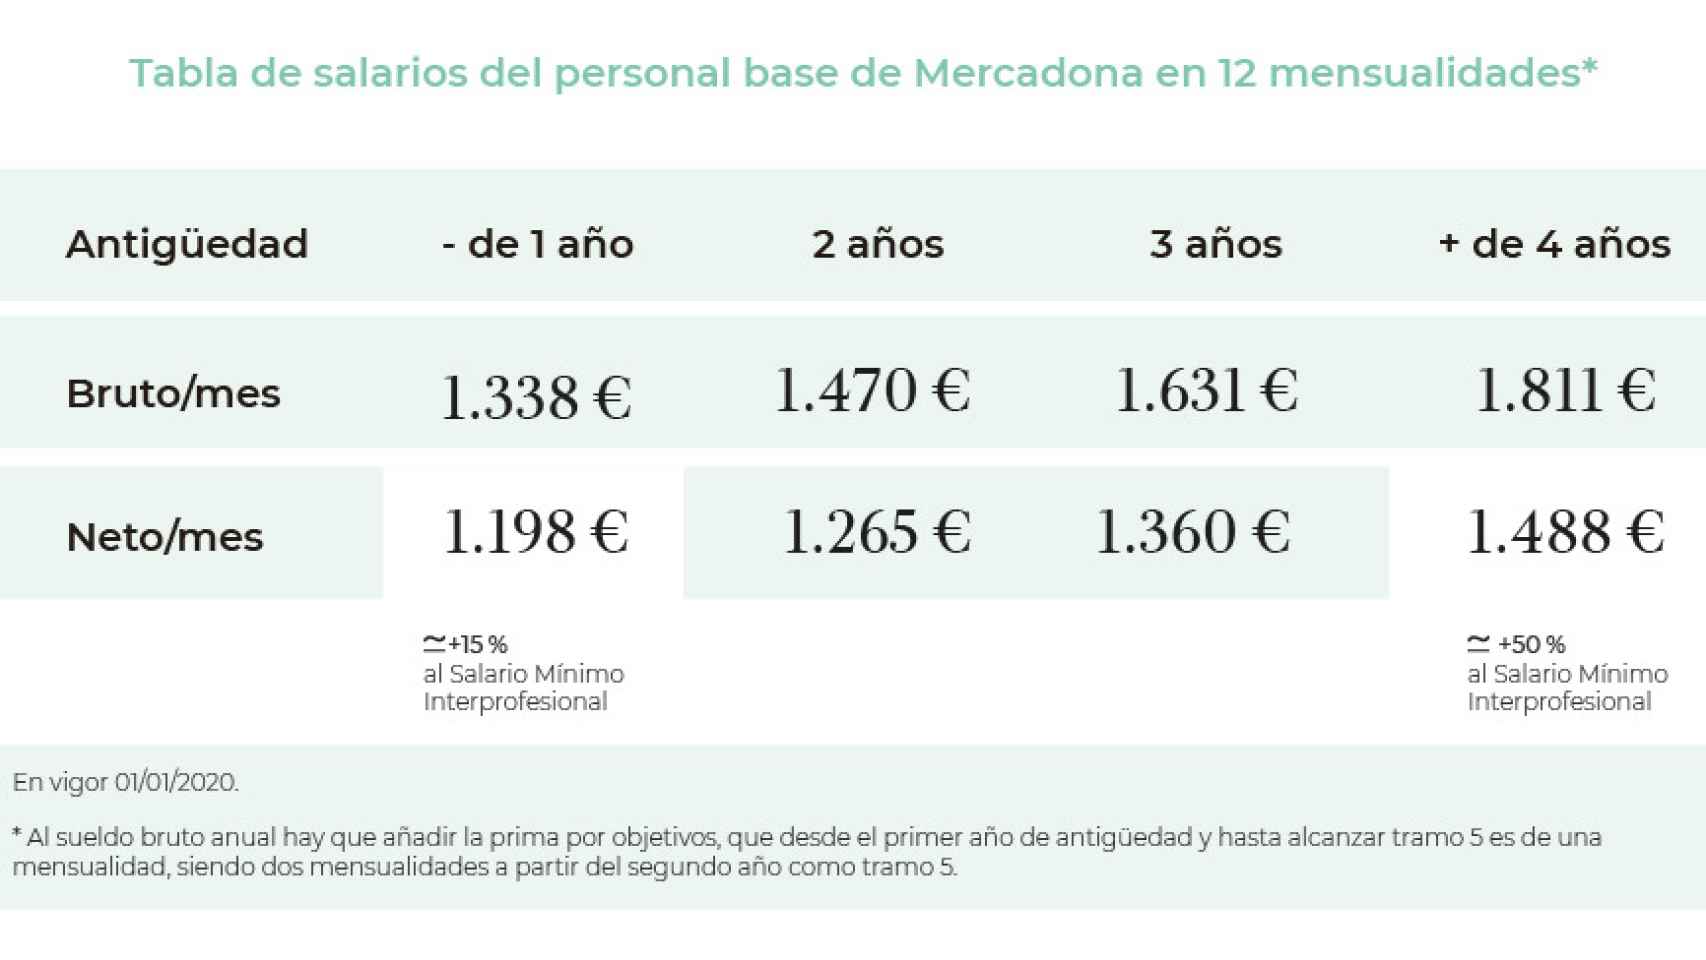 Tabla de salarios del personal base de Mercadona en 12 mensualidades.